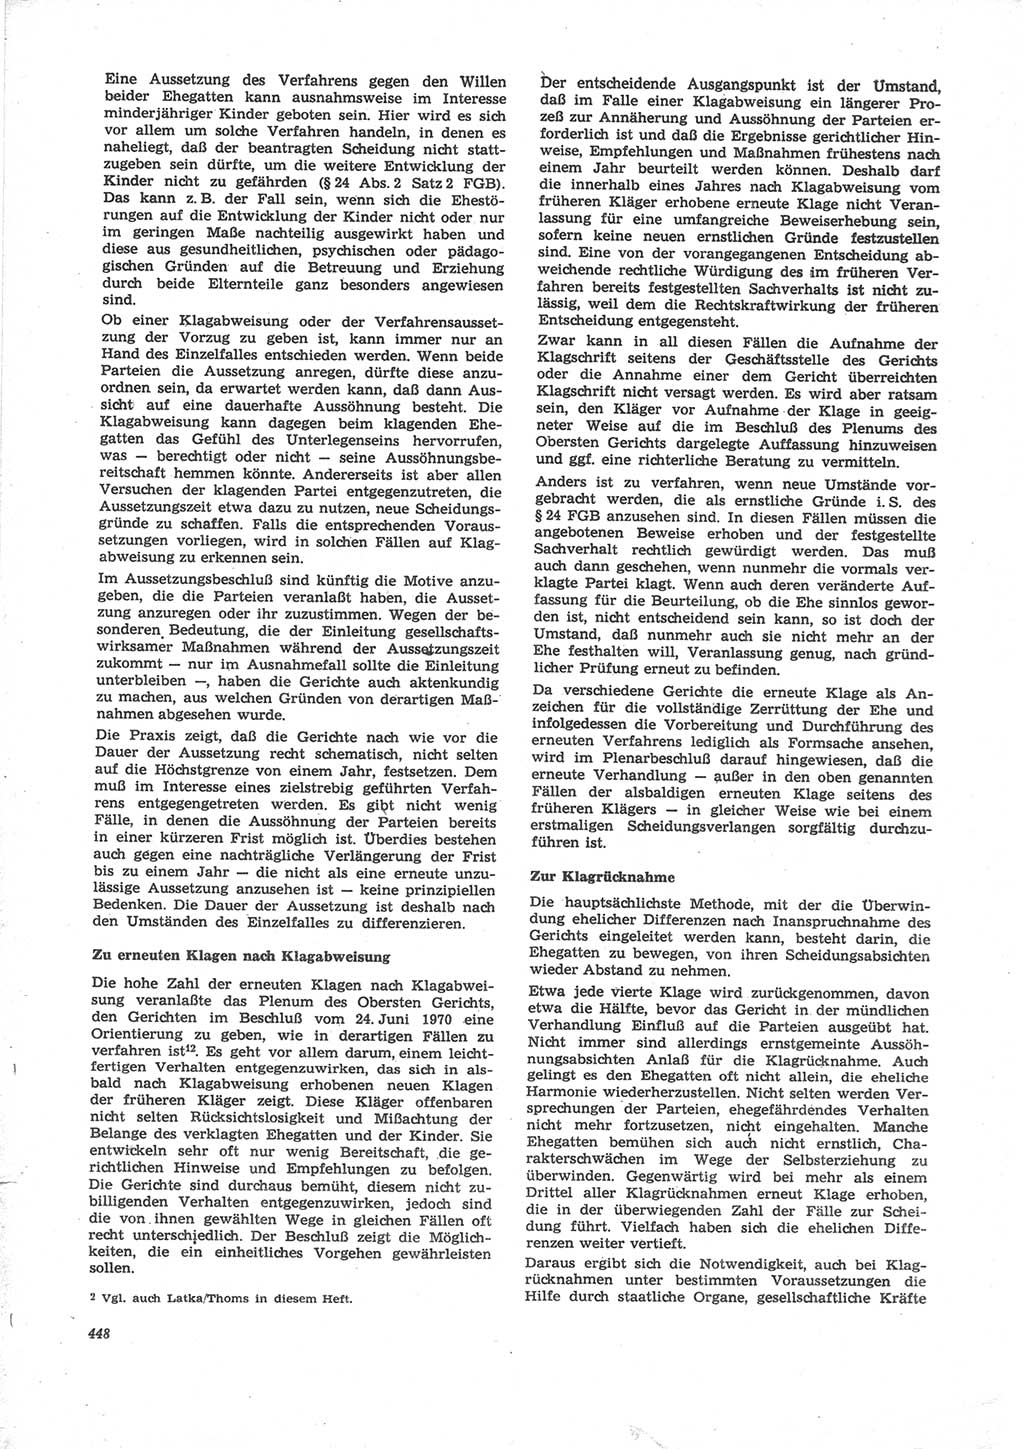 Neue Justiz (NJ), Zeitschrift für Recht und Rechtswissenschaft [Deutsche Demokratische Republik (DDR)], 24. Jahrgang 1970, Seite 448 (NJ DDR 1970, S. 448)